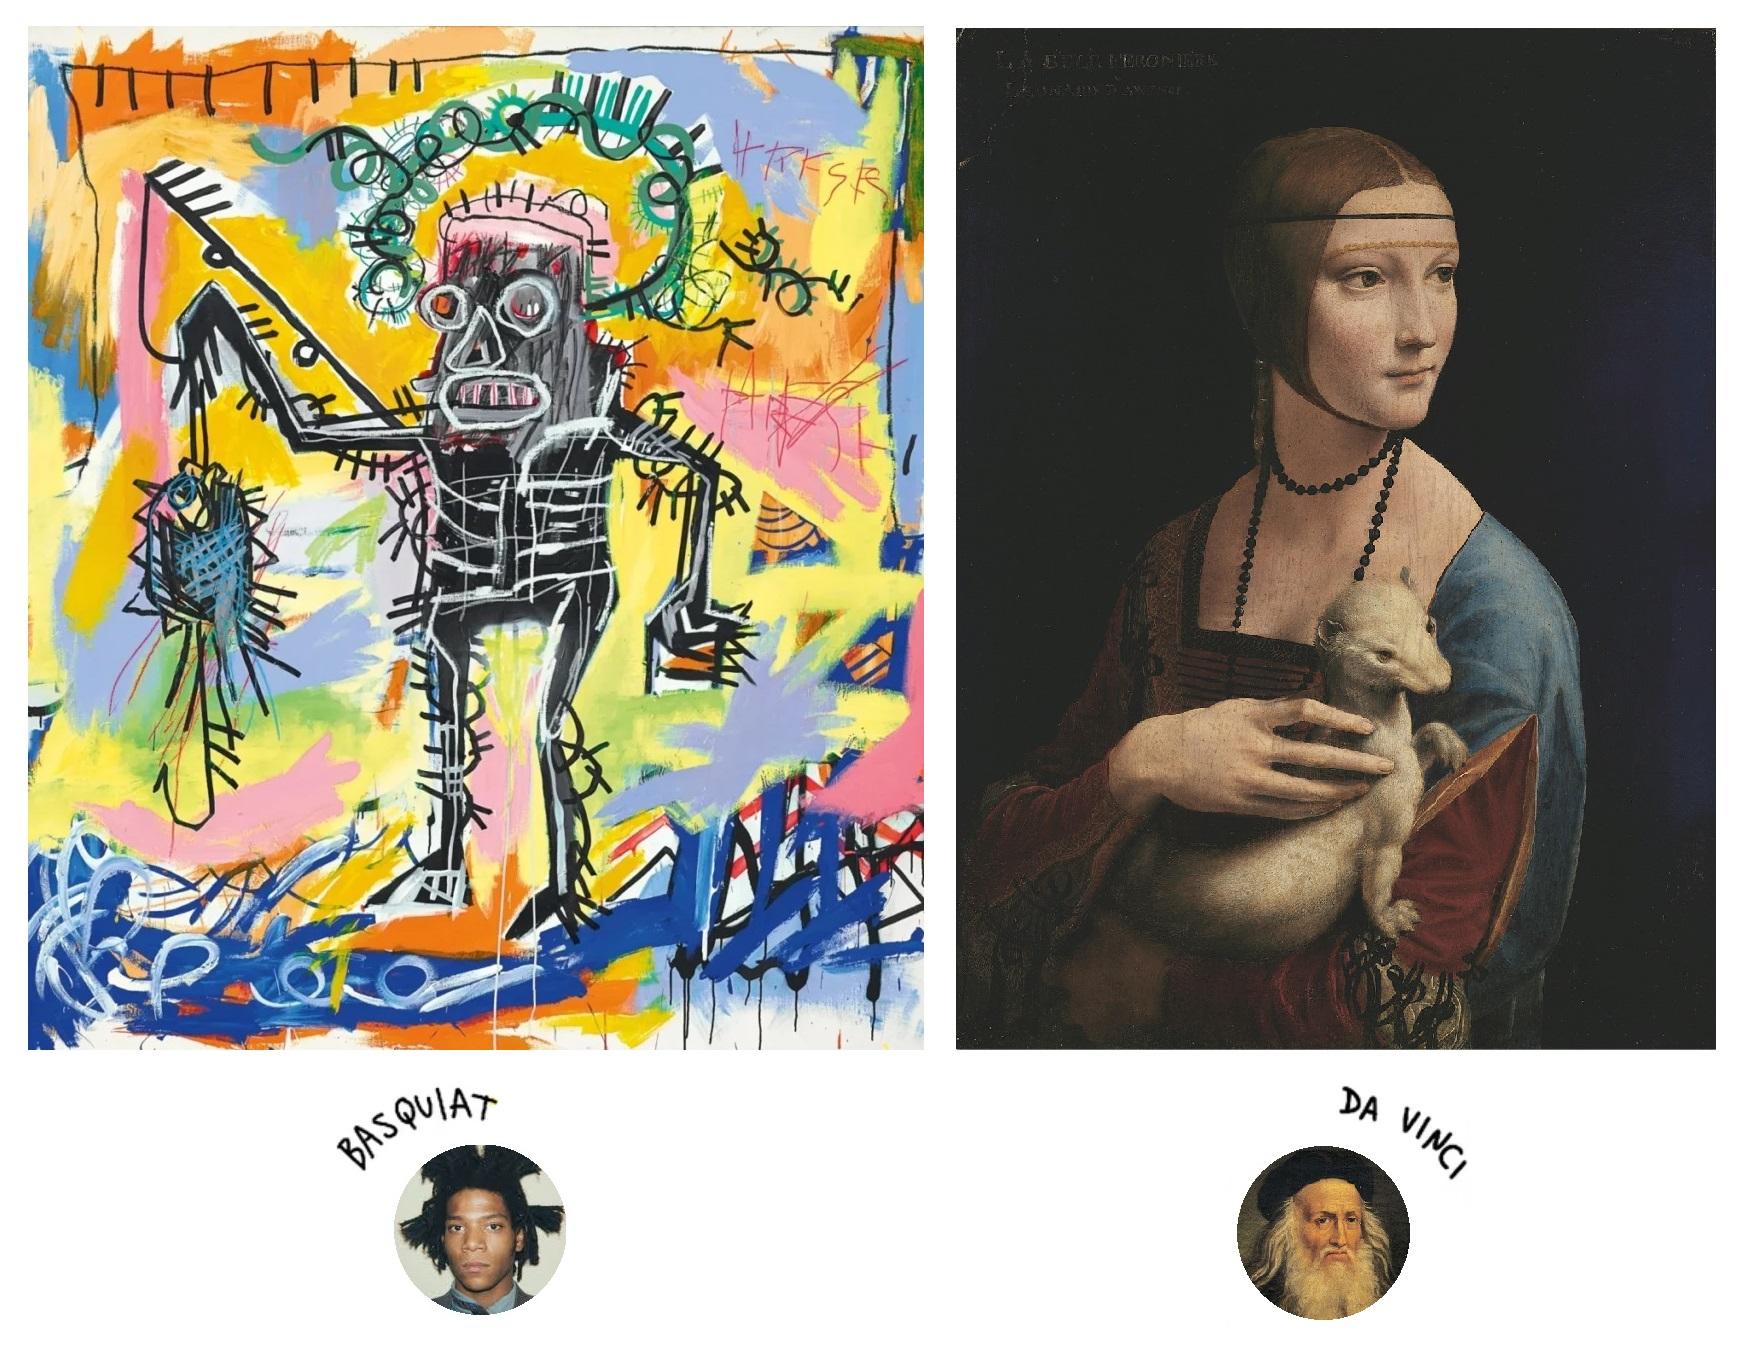 Duas pinturas dispostas uma ao lado da outra, ambas representando um corpo humano. A pintura à esquerda, "Pescador" do Basquiat, se trata de uma representação abstrata do corpo de um homem em pé no centro da tela, feita em tons de tinta preta, cinza e branca. O braço direito do homem está erguido segurando um peixe azul e preto preso em um anzol. Ao redor do corpo central, há pinceladas abstratas em tons de azul, amarelo, laranja, verde, rosa e preto. À direita, temos a pintura do Leonardo da Vinci, representando uma mulher branca sobre um fundo preto segurando um animal branco no colo. A mulher está olhando para o lado, veste roupas azuis, duas faixas ao redor da testa, e um colar marrom no pescoço.